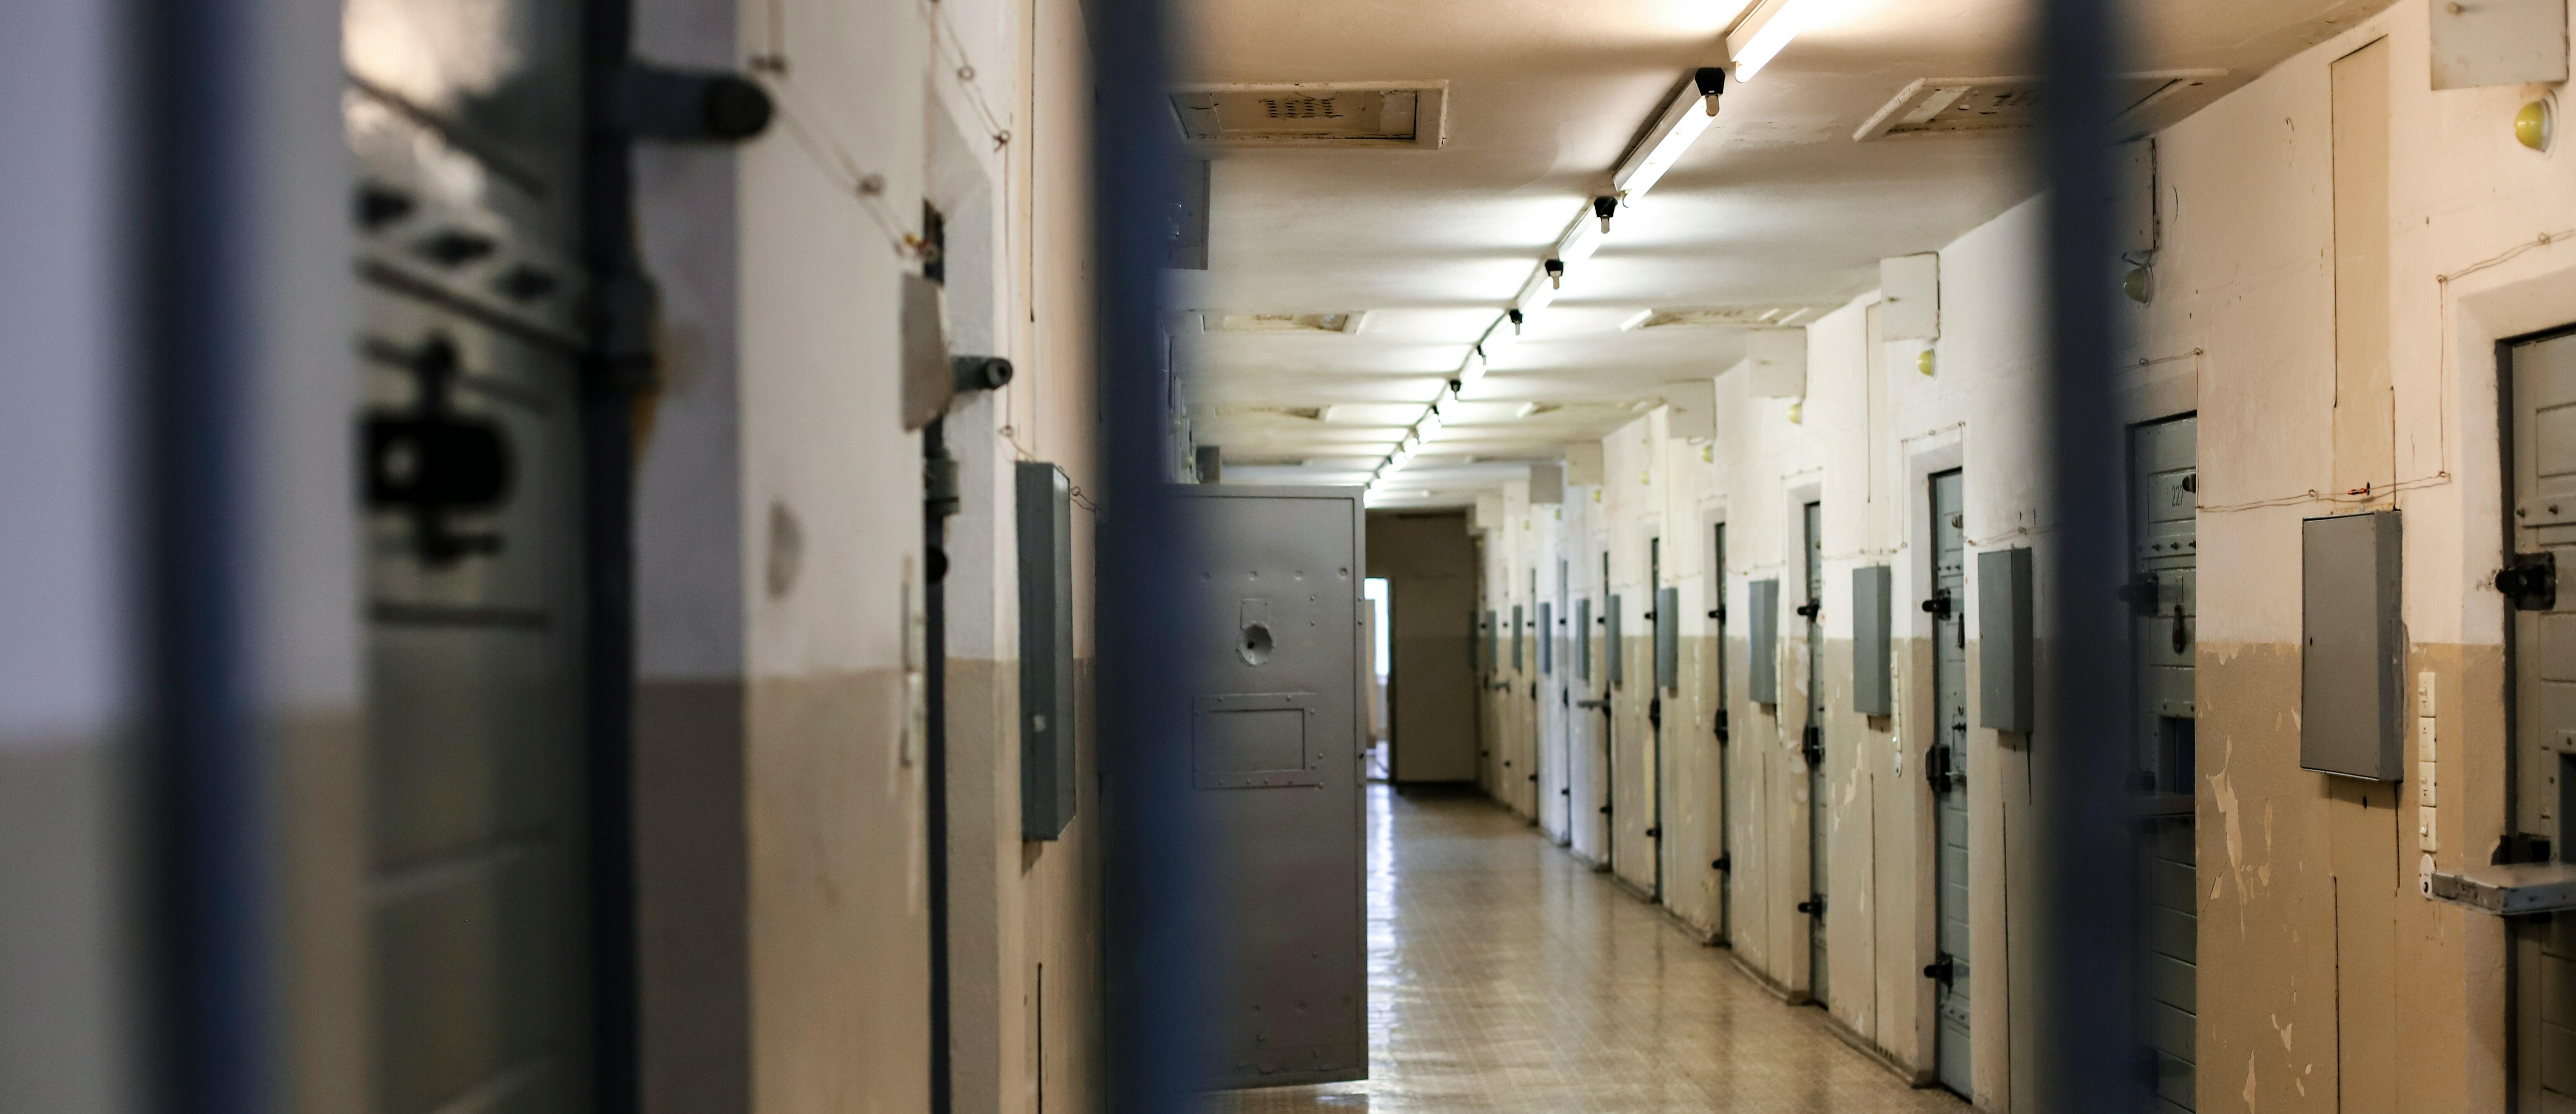 Imatge de l'interior d'una presó